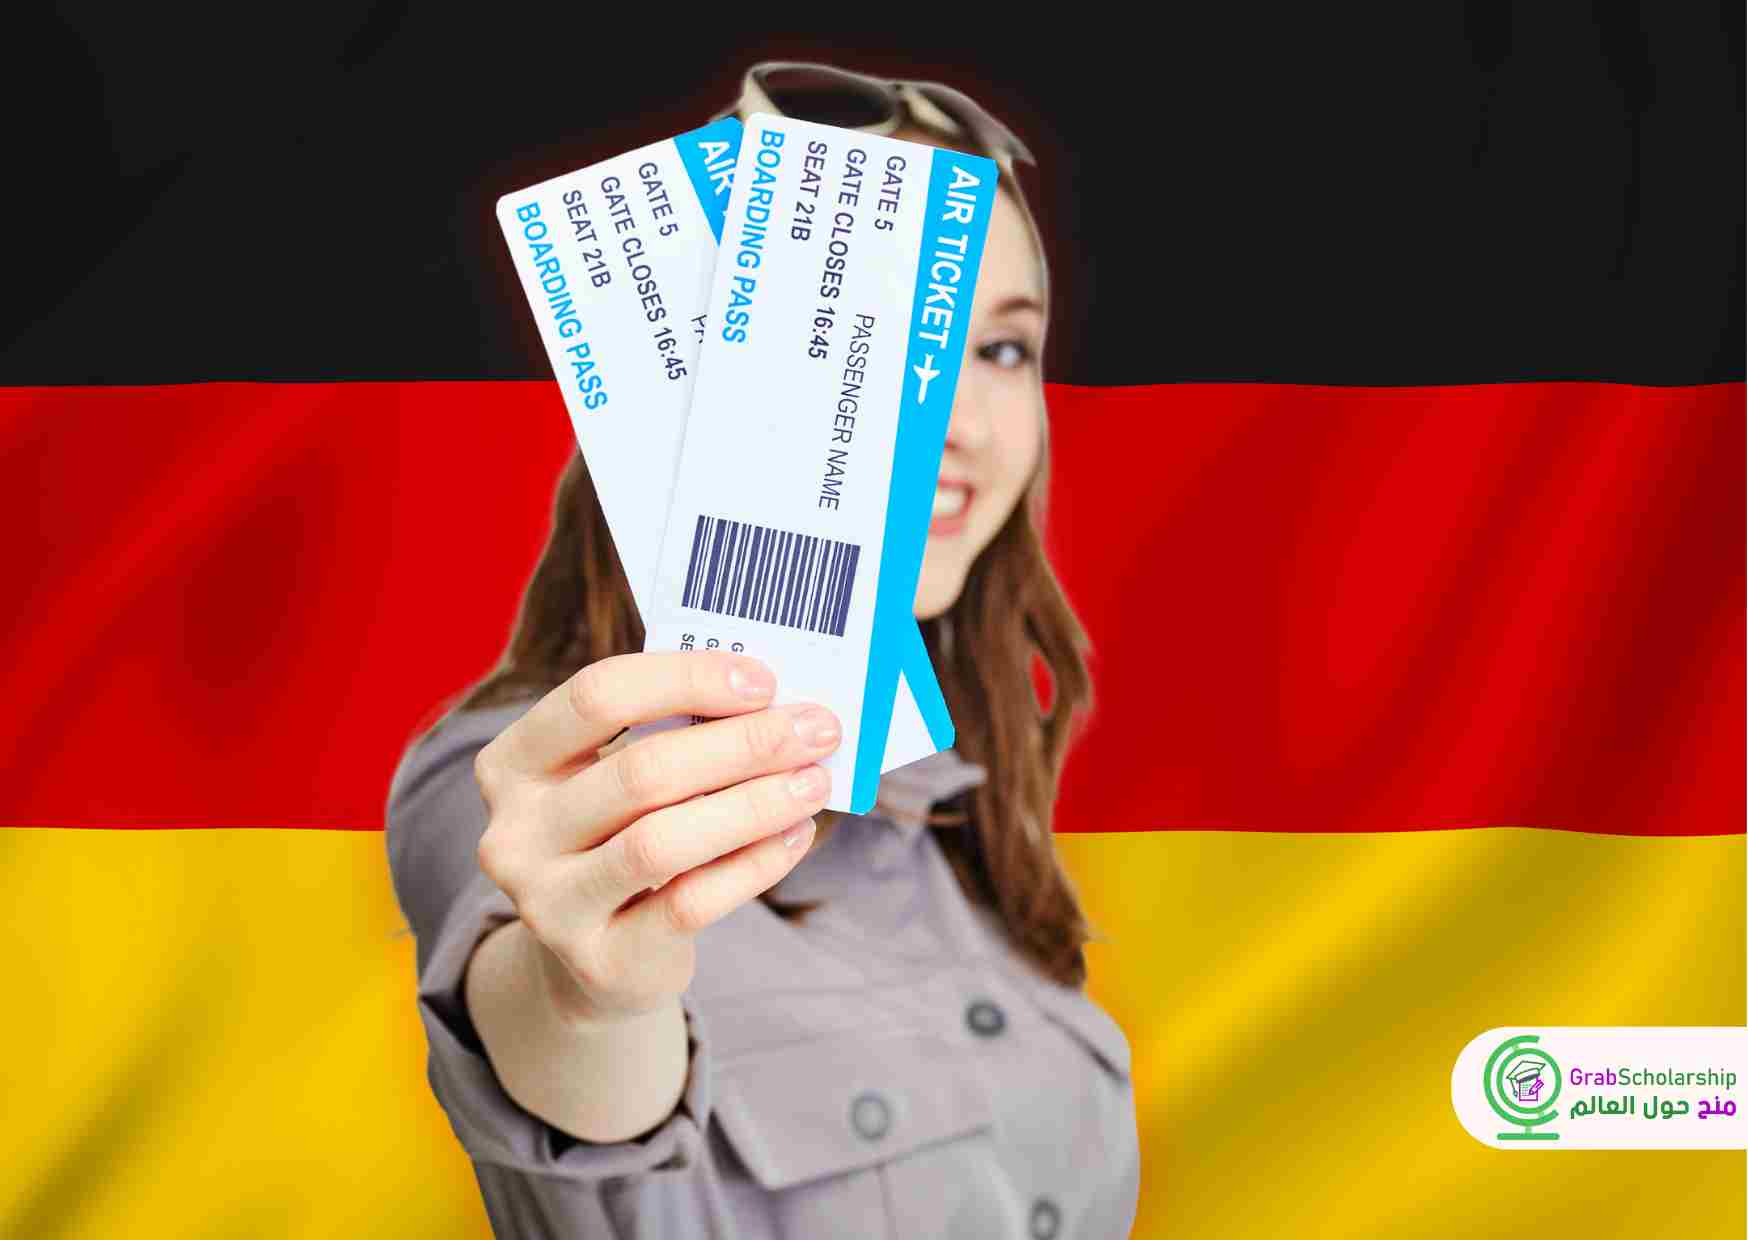 تذاكر مجانية إلي ألمانيا لك ولعائلتك من خلال زمالة هومبولت